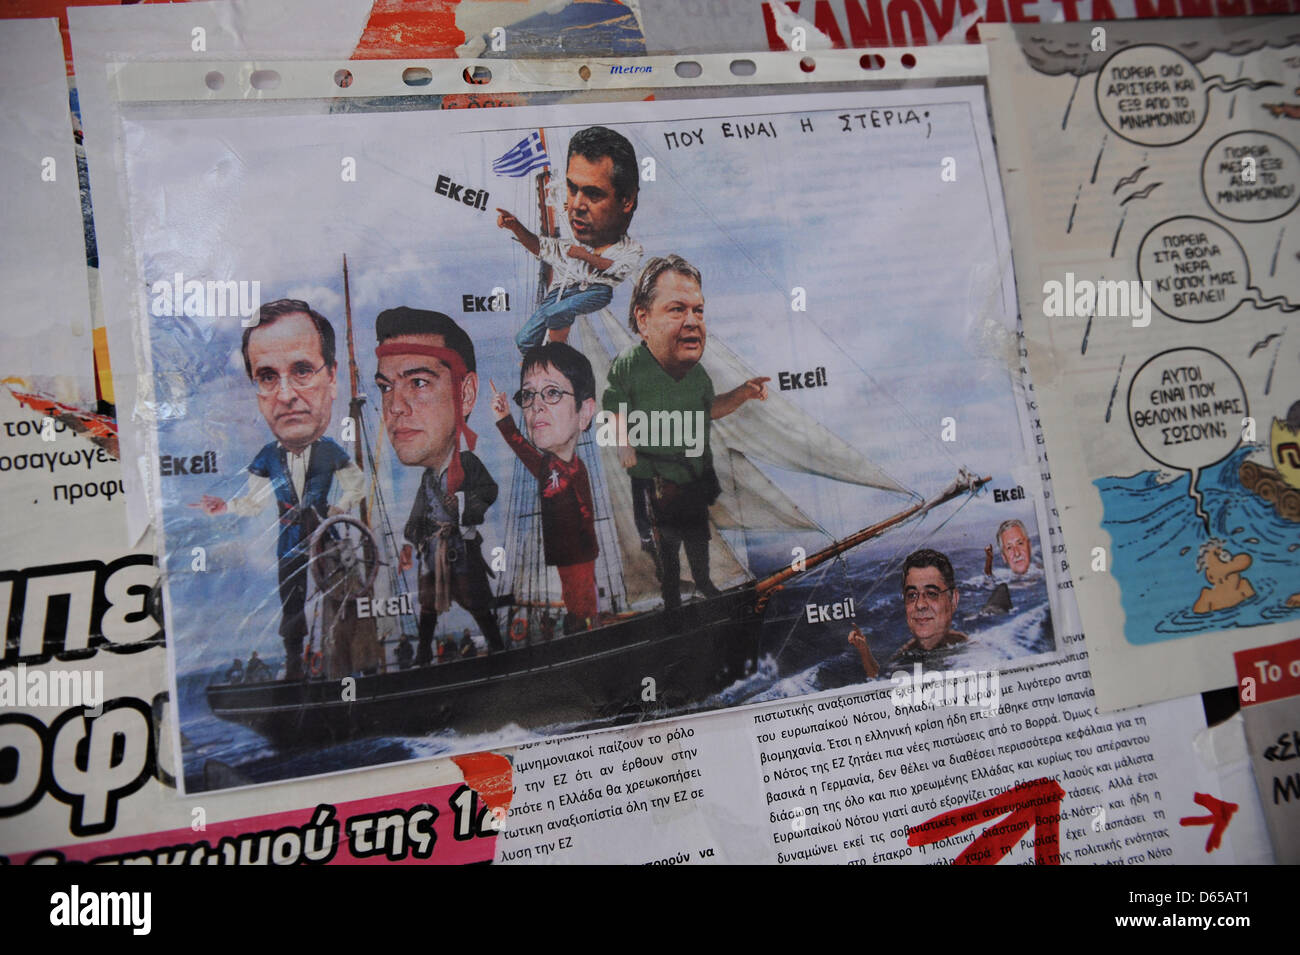 Una caricatura con i politici greci a bordo di una barca a vela le mani a un venditore ambulante di stand al Pireo, Germania, 15 giugno 2012. (L-R) Antonis SAMARAS (Nea Dimokratia), Alexis Tsipras (SYRIZA), Alkea Papariga (KKE), Panos Kammenos (ANEL), Evangelos Venizelos (Pasok), Nikolaos Michaloliakos (XA), Fotis Kouvelis (DIMAR). Parte superiore destra legge "Dove si trova il paese?" Le elezioni parlamentari si t Foto Stock